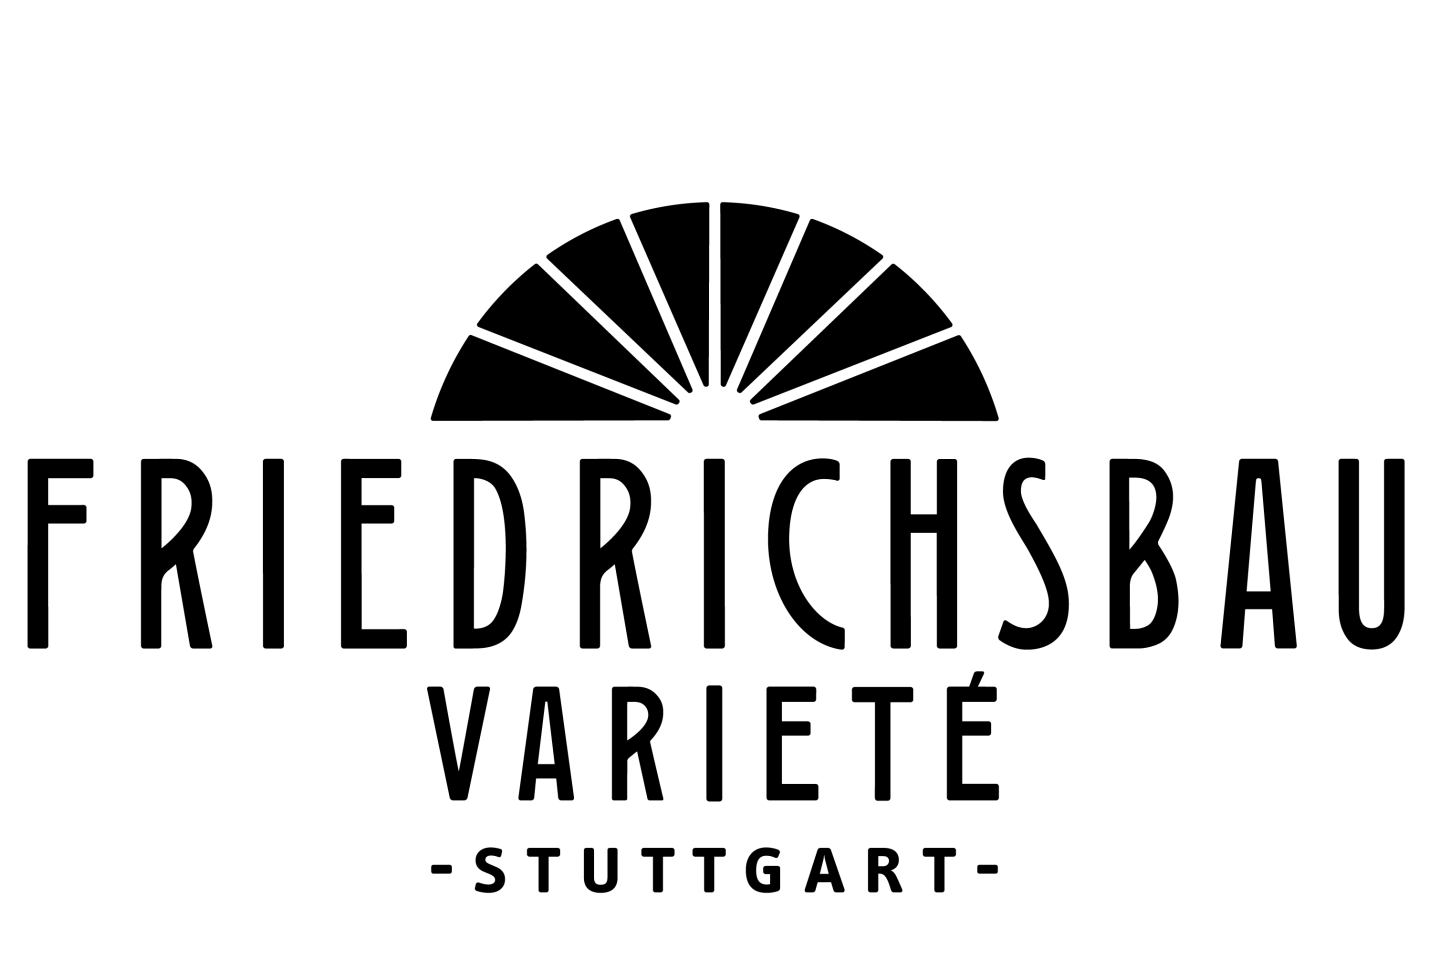 Friedrichsbau Varieté - Stuttgart aktueller Spielplan auf der Webseite